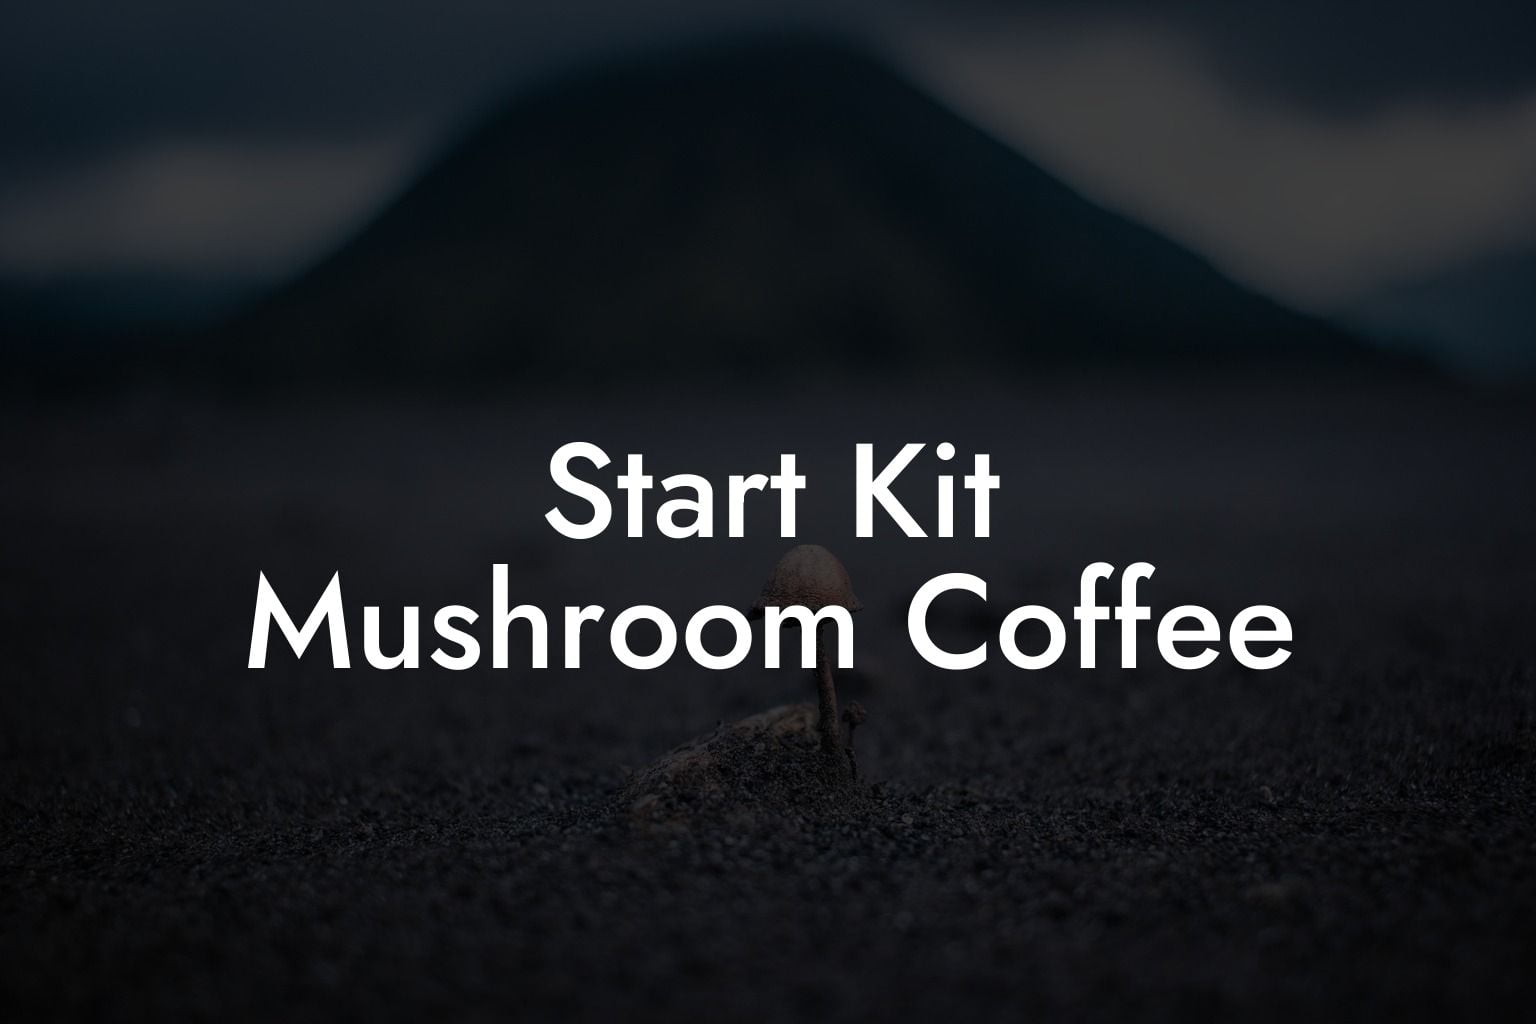 Start Kit Mushroom Coffee